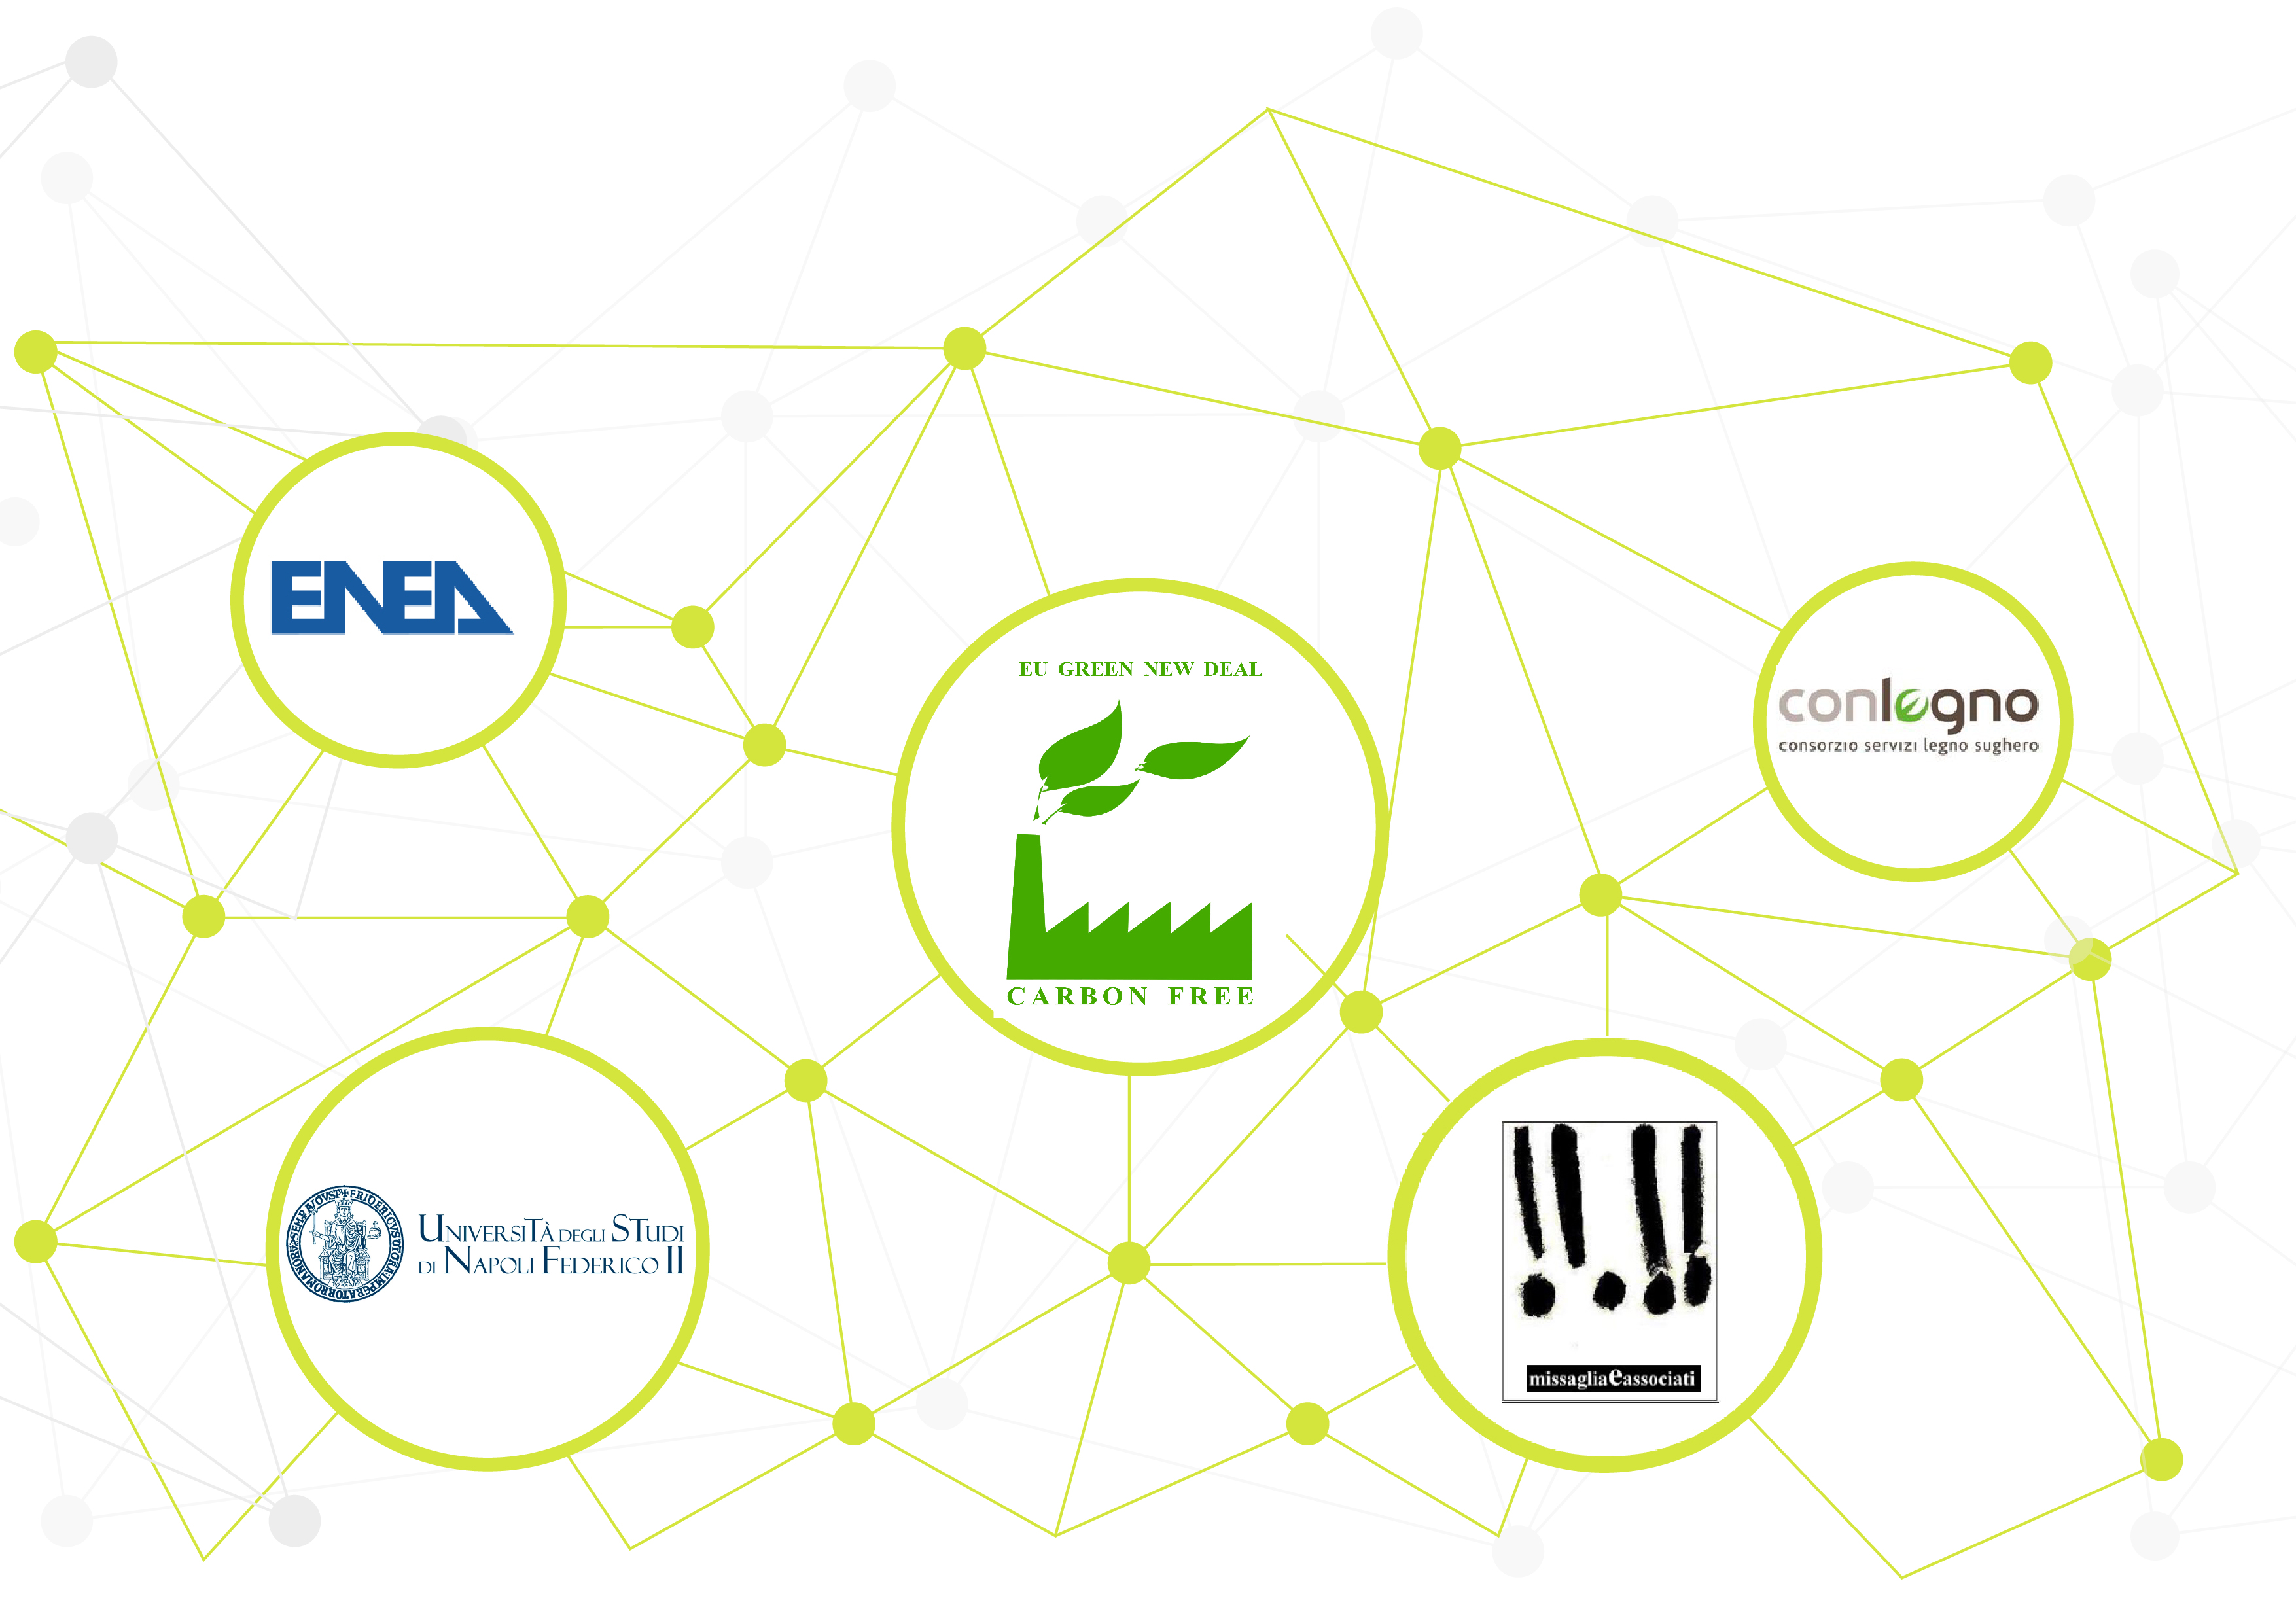 partner: ENEA, EU Green news deal, Universitè degli studi di Napoli Federico II, Conlegno, Missaglia e associati